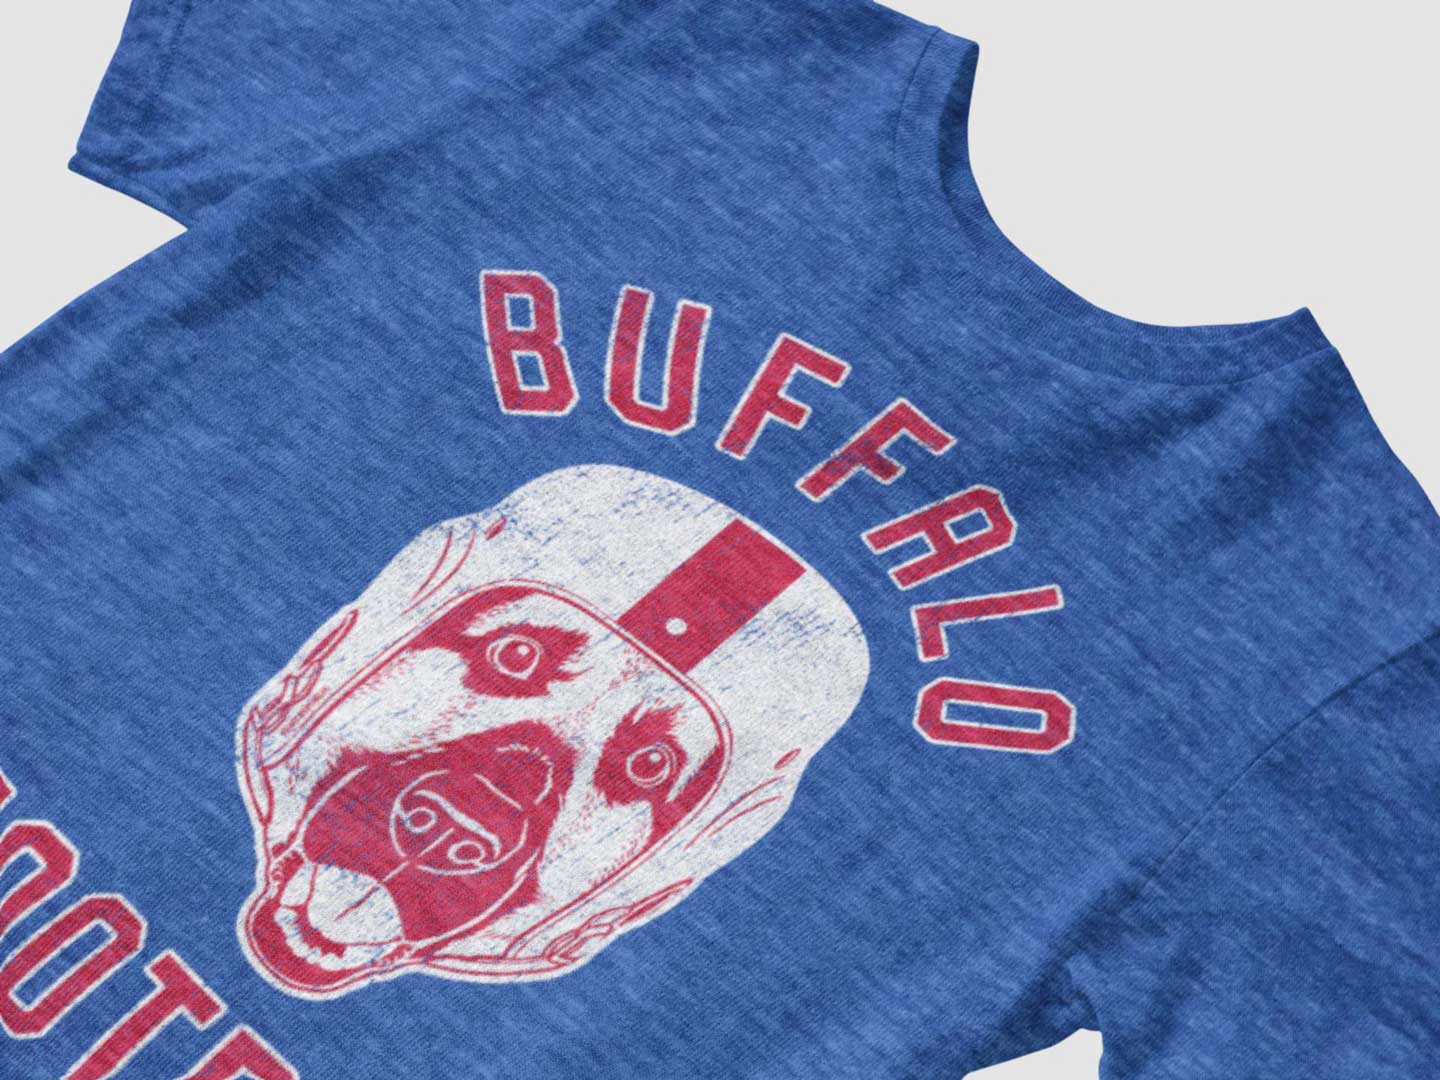 Buffalo Football German Shepherd T-Shirt